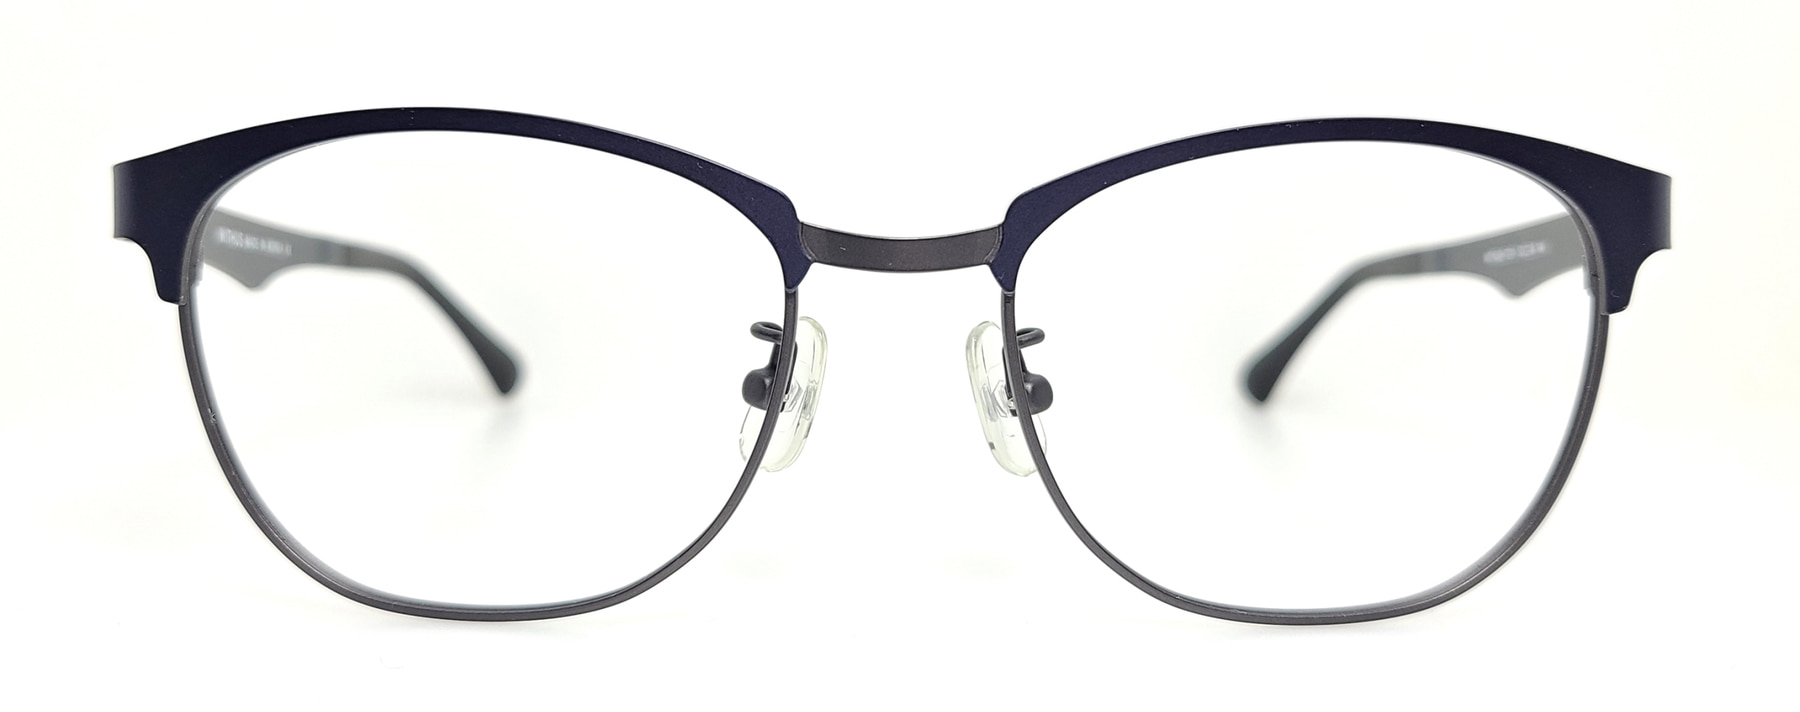 WITHUS-7311, Korean glasses, sunglasses, eyeglasses, glasses